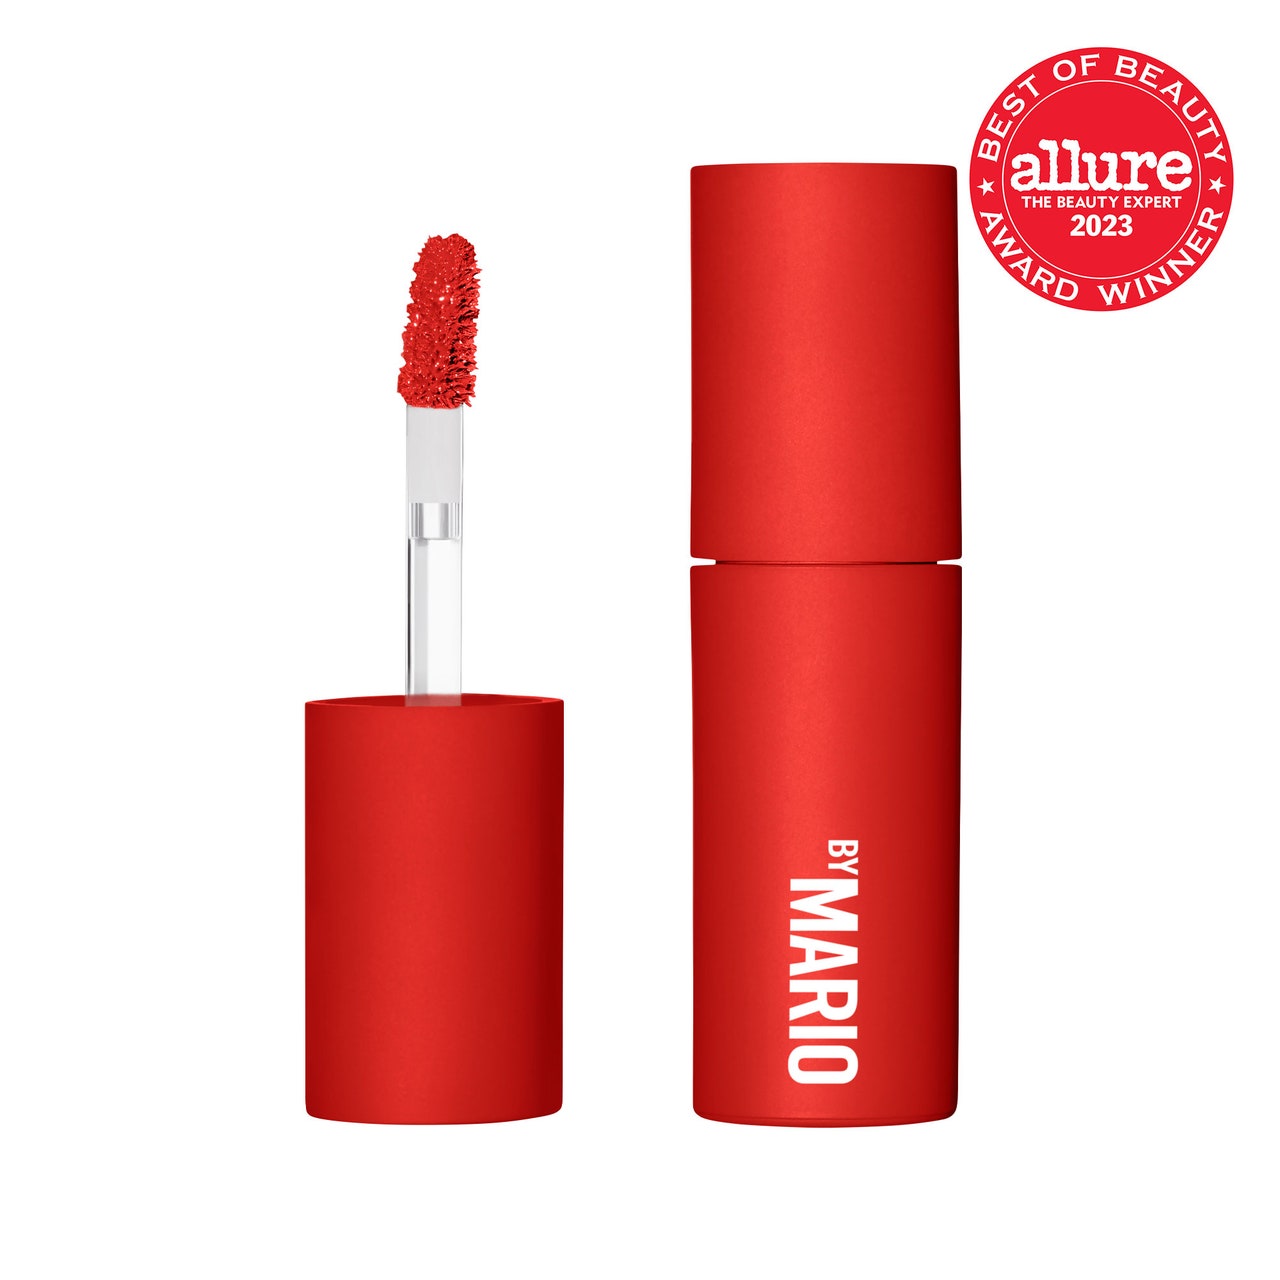 Make-up von Mario MoistureGlow Plumping Lip Color, rotes Fläschchen mit flüssigem Lippenstift mit Kappe und Stift an der Seite auf weißem Hintergrund mit rotem Allure BoB-Siegel in der oberen rechten Ecke